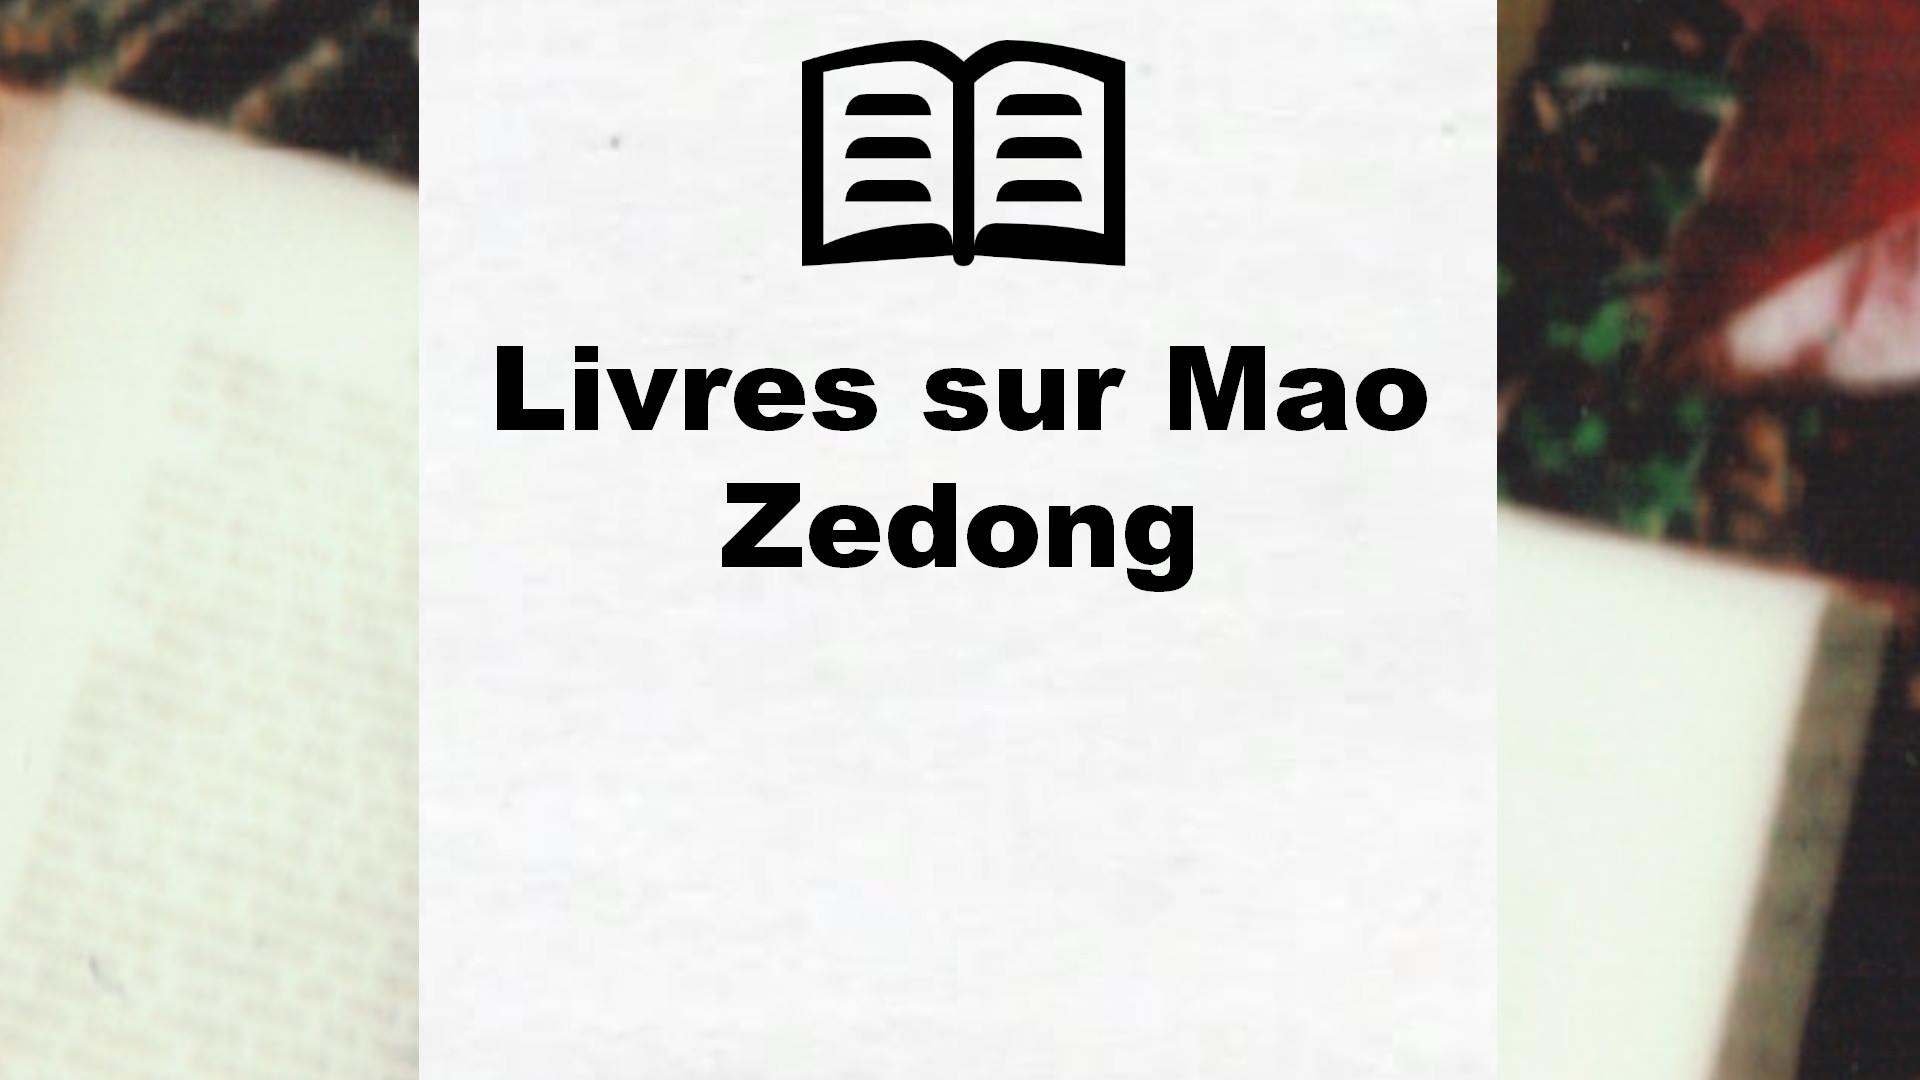 Livres sur Mao Zedong